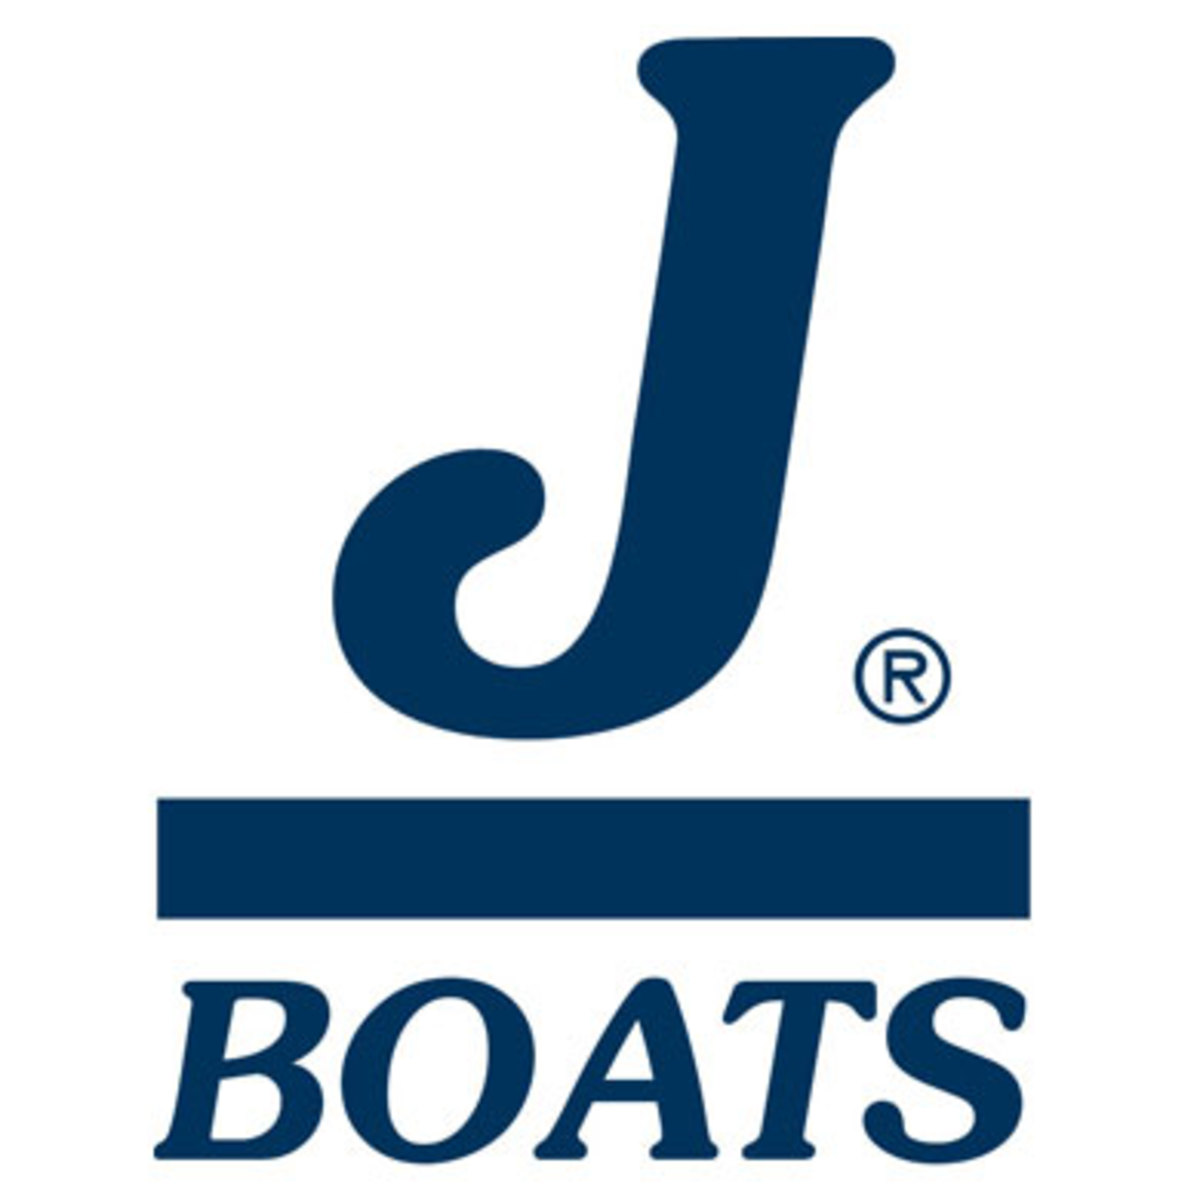 www.jboats.com